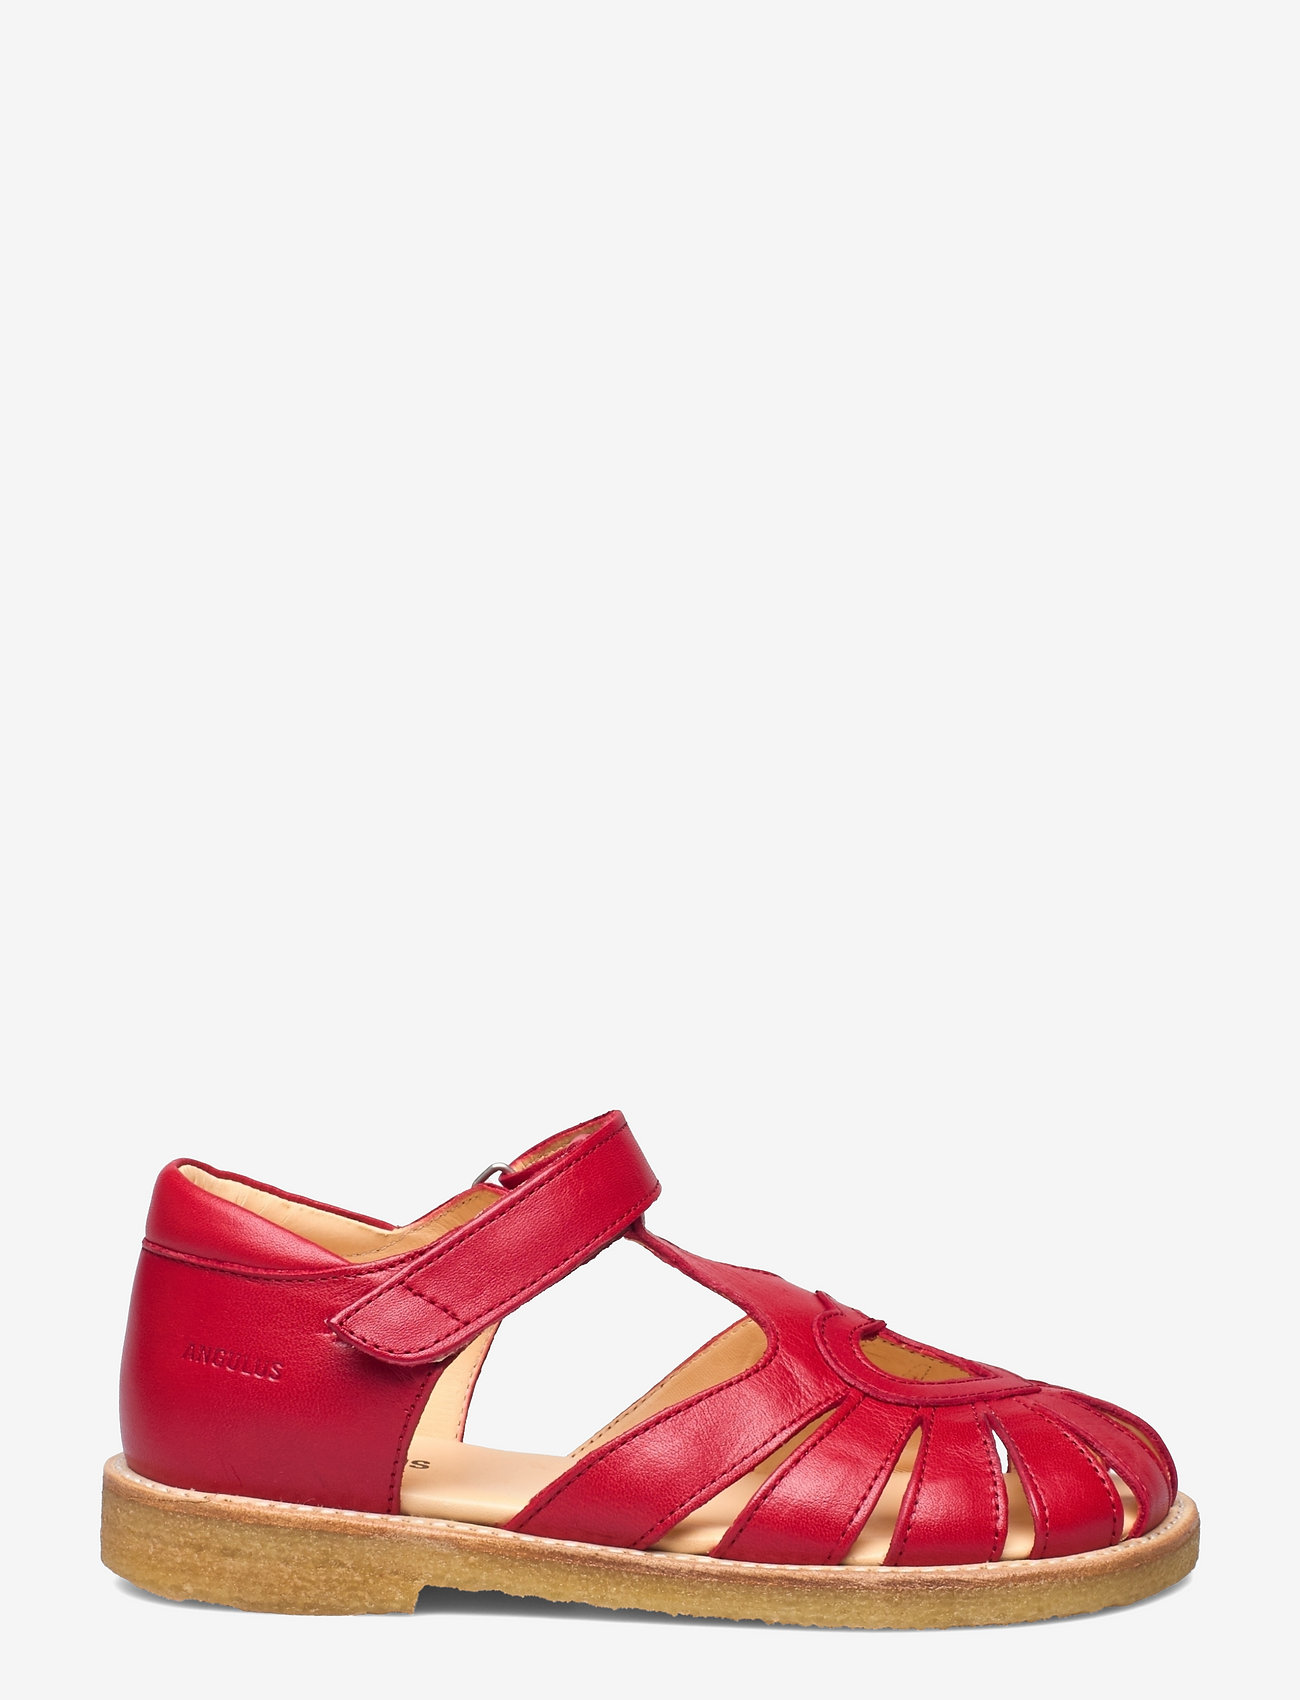 ANGULUS - Sandals - flat - closed toe -  - sandaalidrihmsandaalid - 1412 red - 1